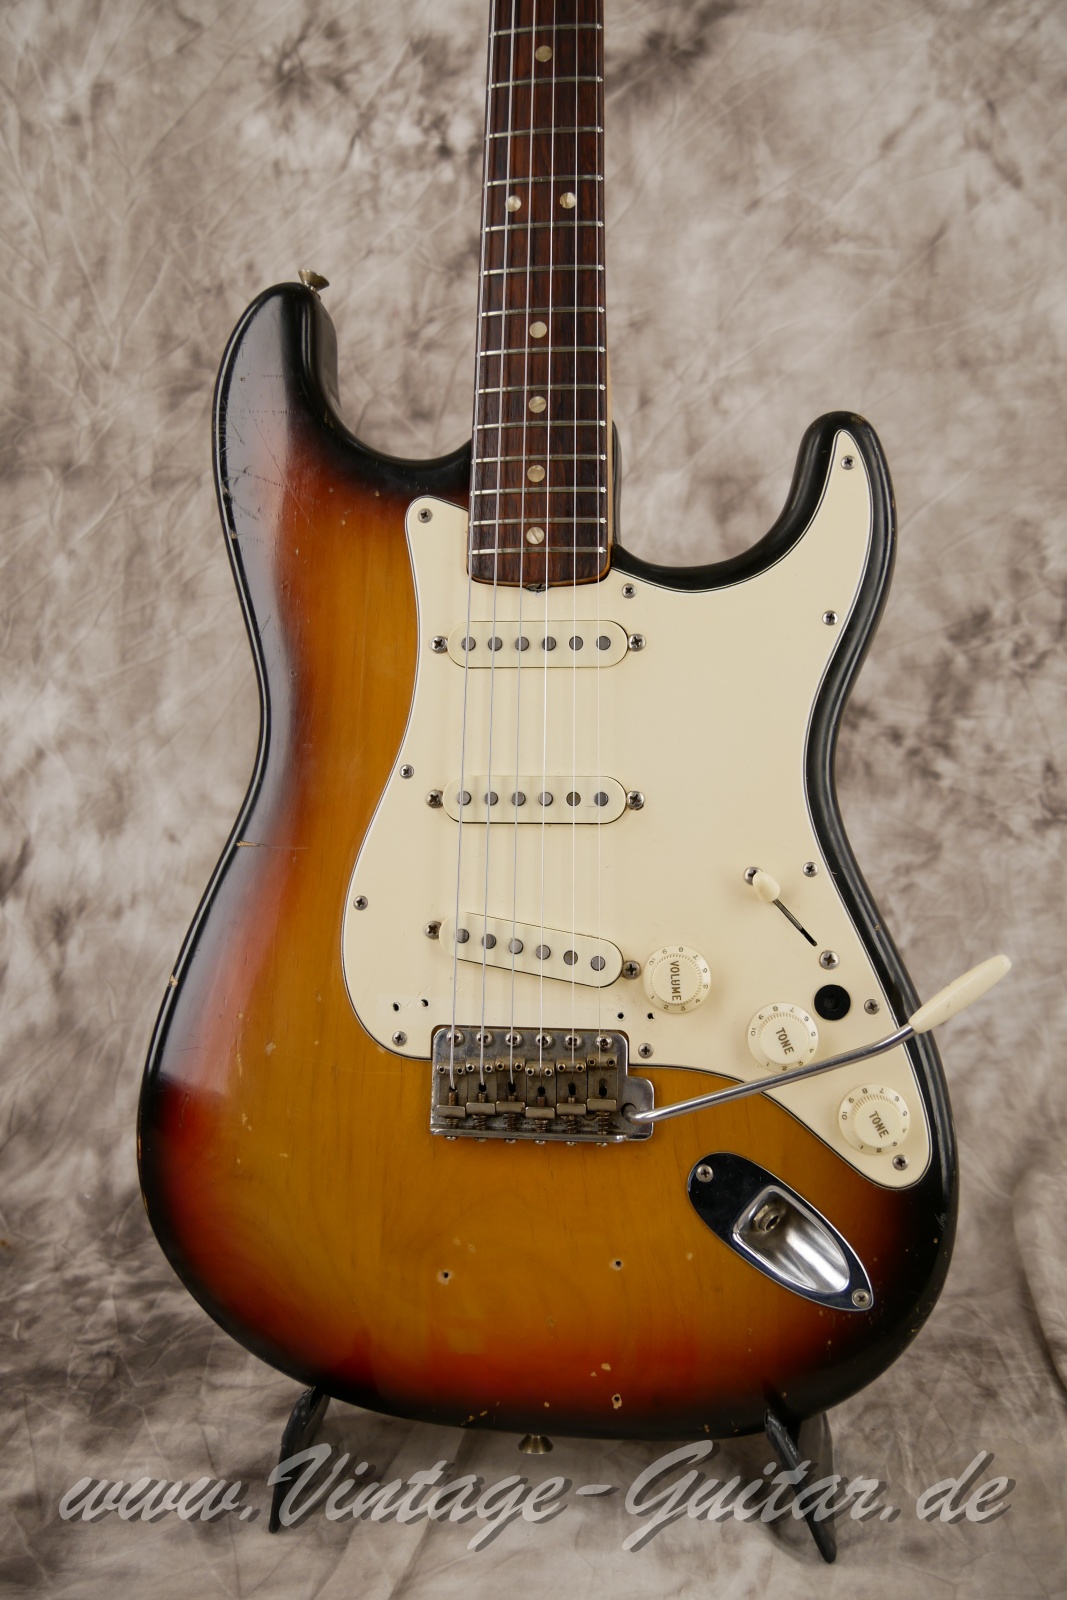 Fender_Stratocaster_sunburst_4hole_1971-007.JPG